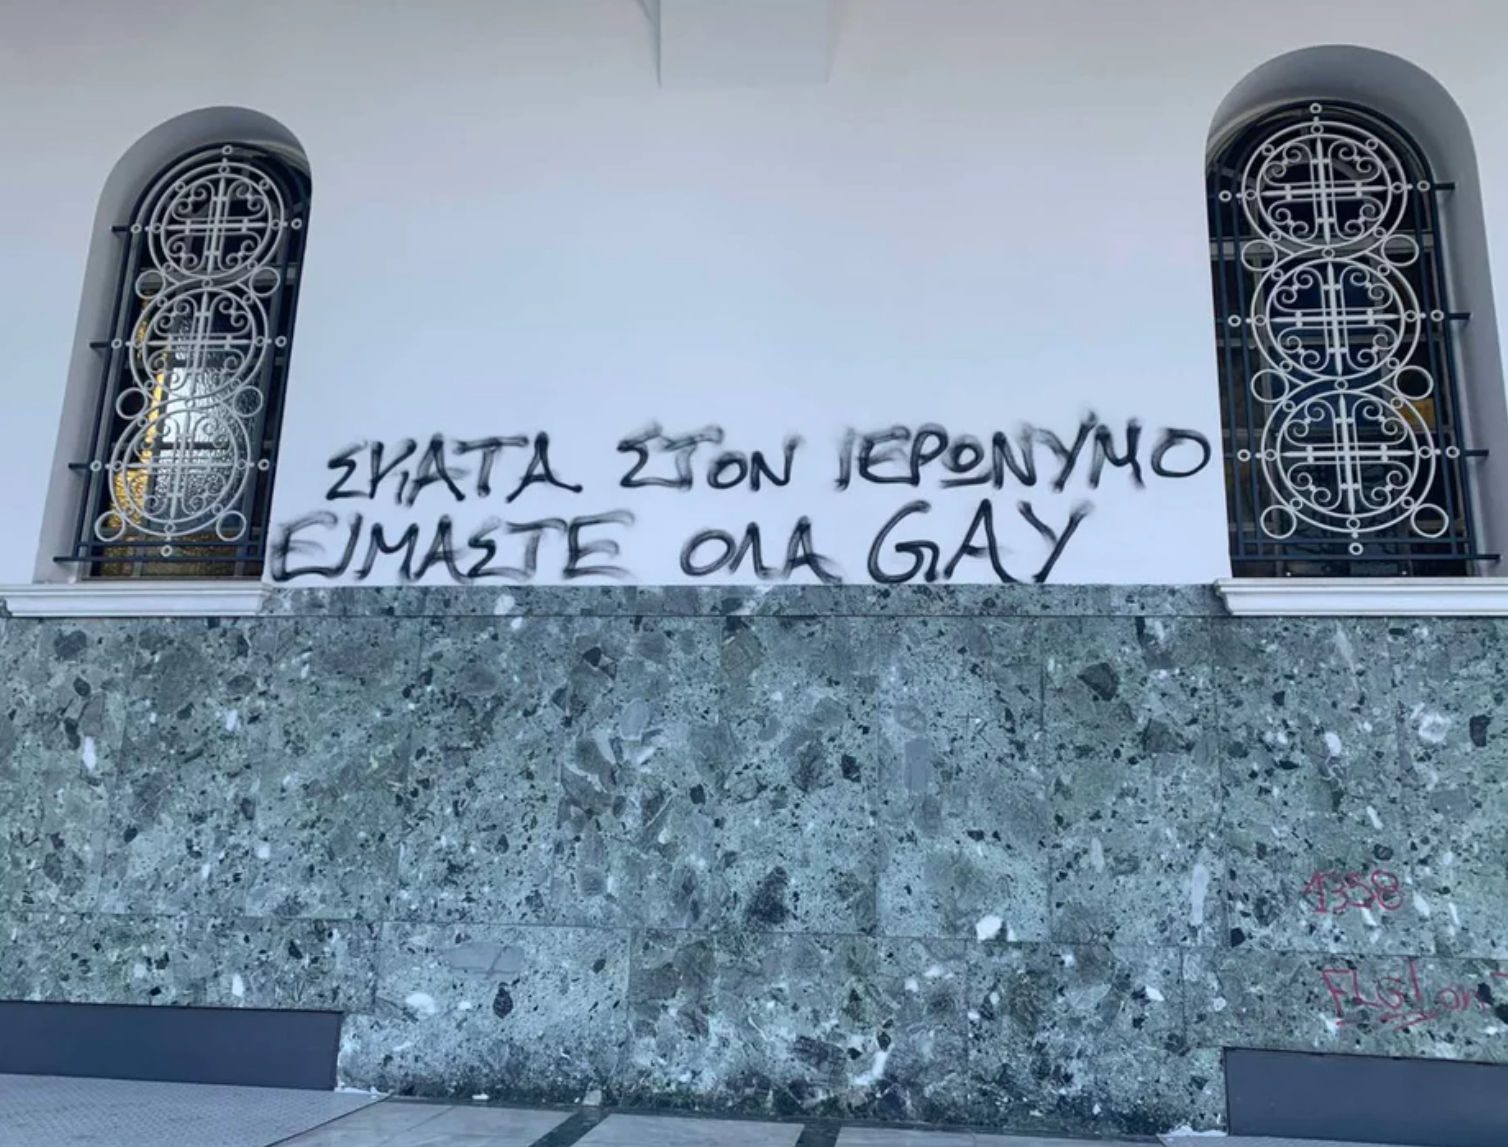 «Σκ@@ στον Ιερώνυμο είμαστε όλα gay»: Αισχρά συνθήματα υπέρ των ομόφυλων, βανδάλισαν εκκλησία -Η απάντηση του Μητροπολίτη